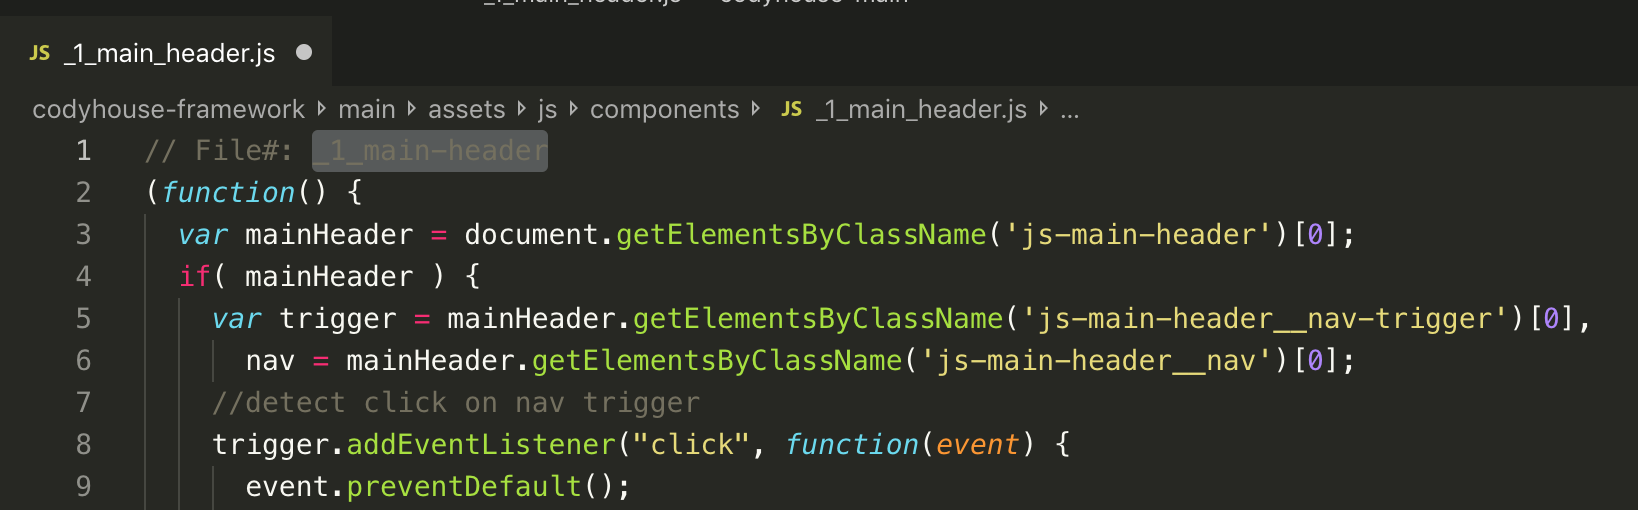 Import components js code 